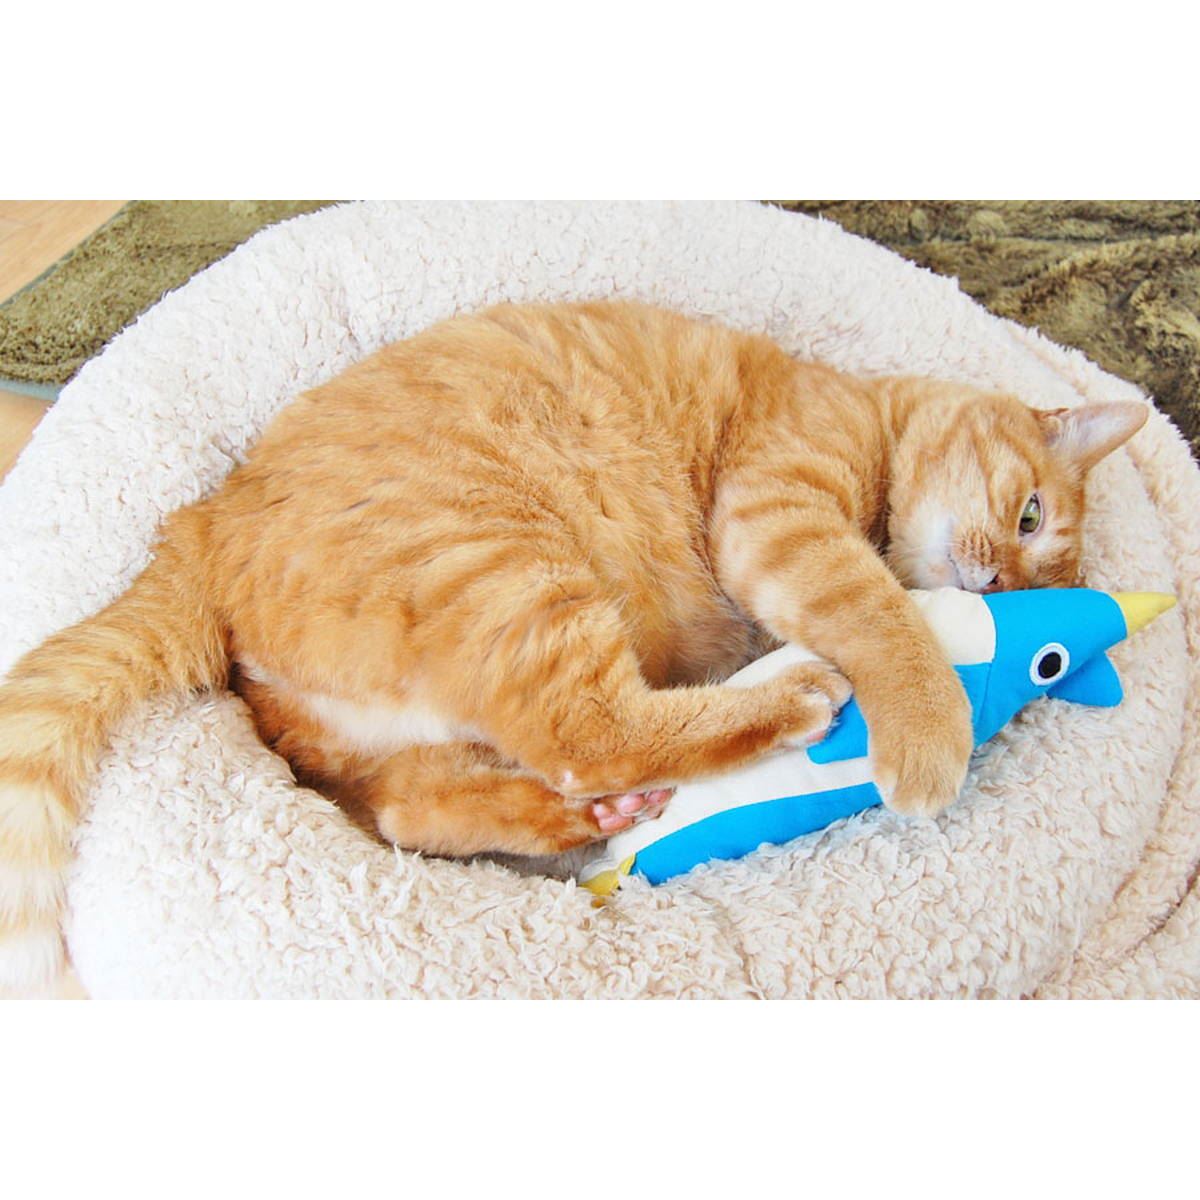 猫が喜ぶおもちゃはこれ！ 試してわかった傑作猫用グッズ20選【猫を愛するすべての人へ】 - 価格.comマガジン